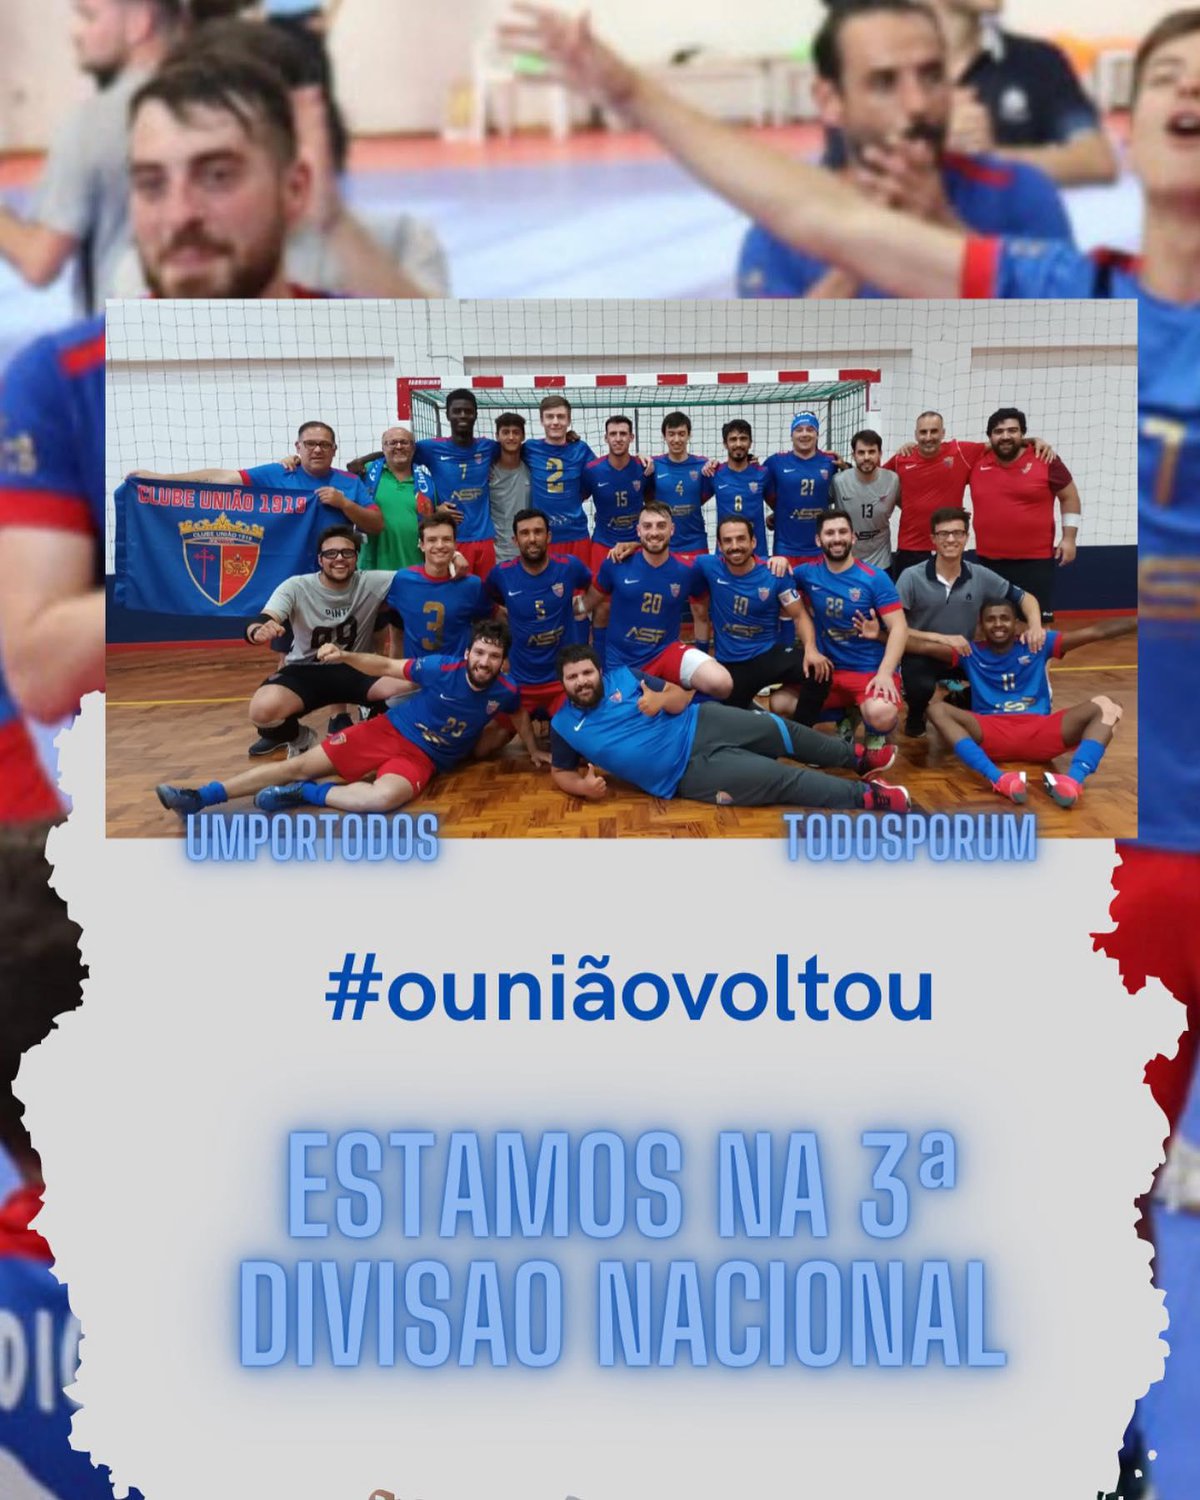 O Futsal do União está de volta aos Nacionais